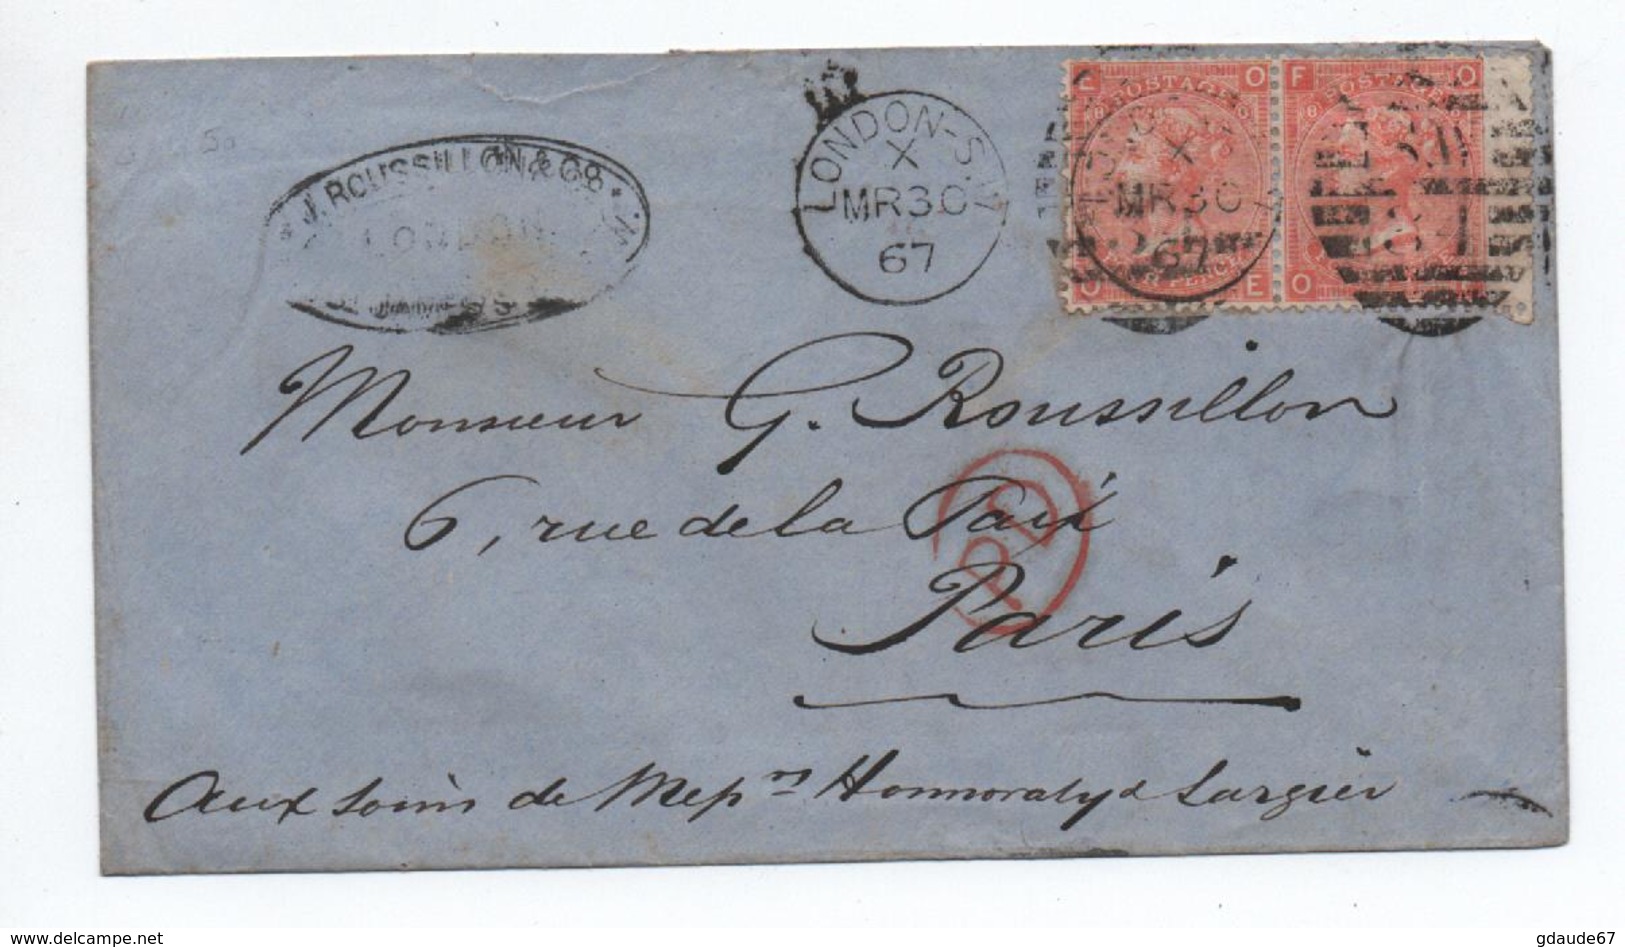 GRANDE BRETAGNE - 1867 - ENVELOPPE Avec PAIRE YVERT N° 32 Pour PARIS - Poststempel